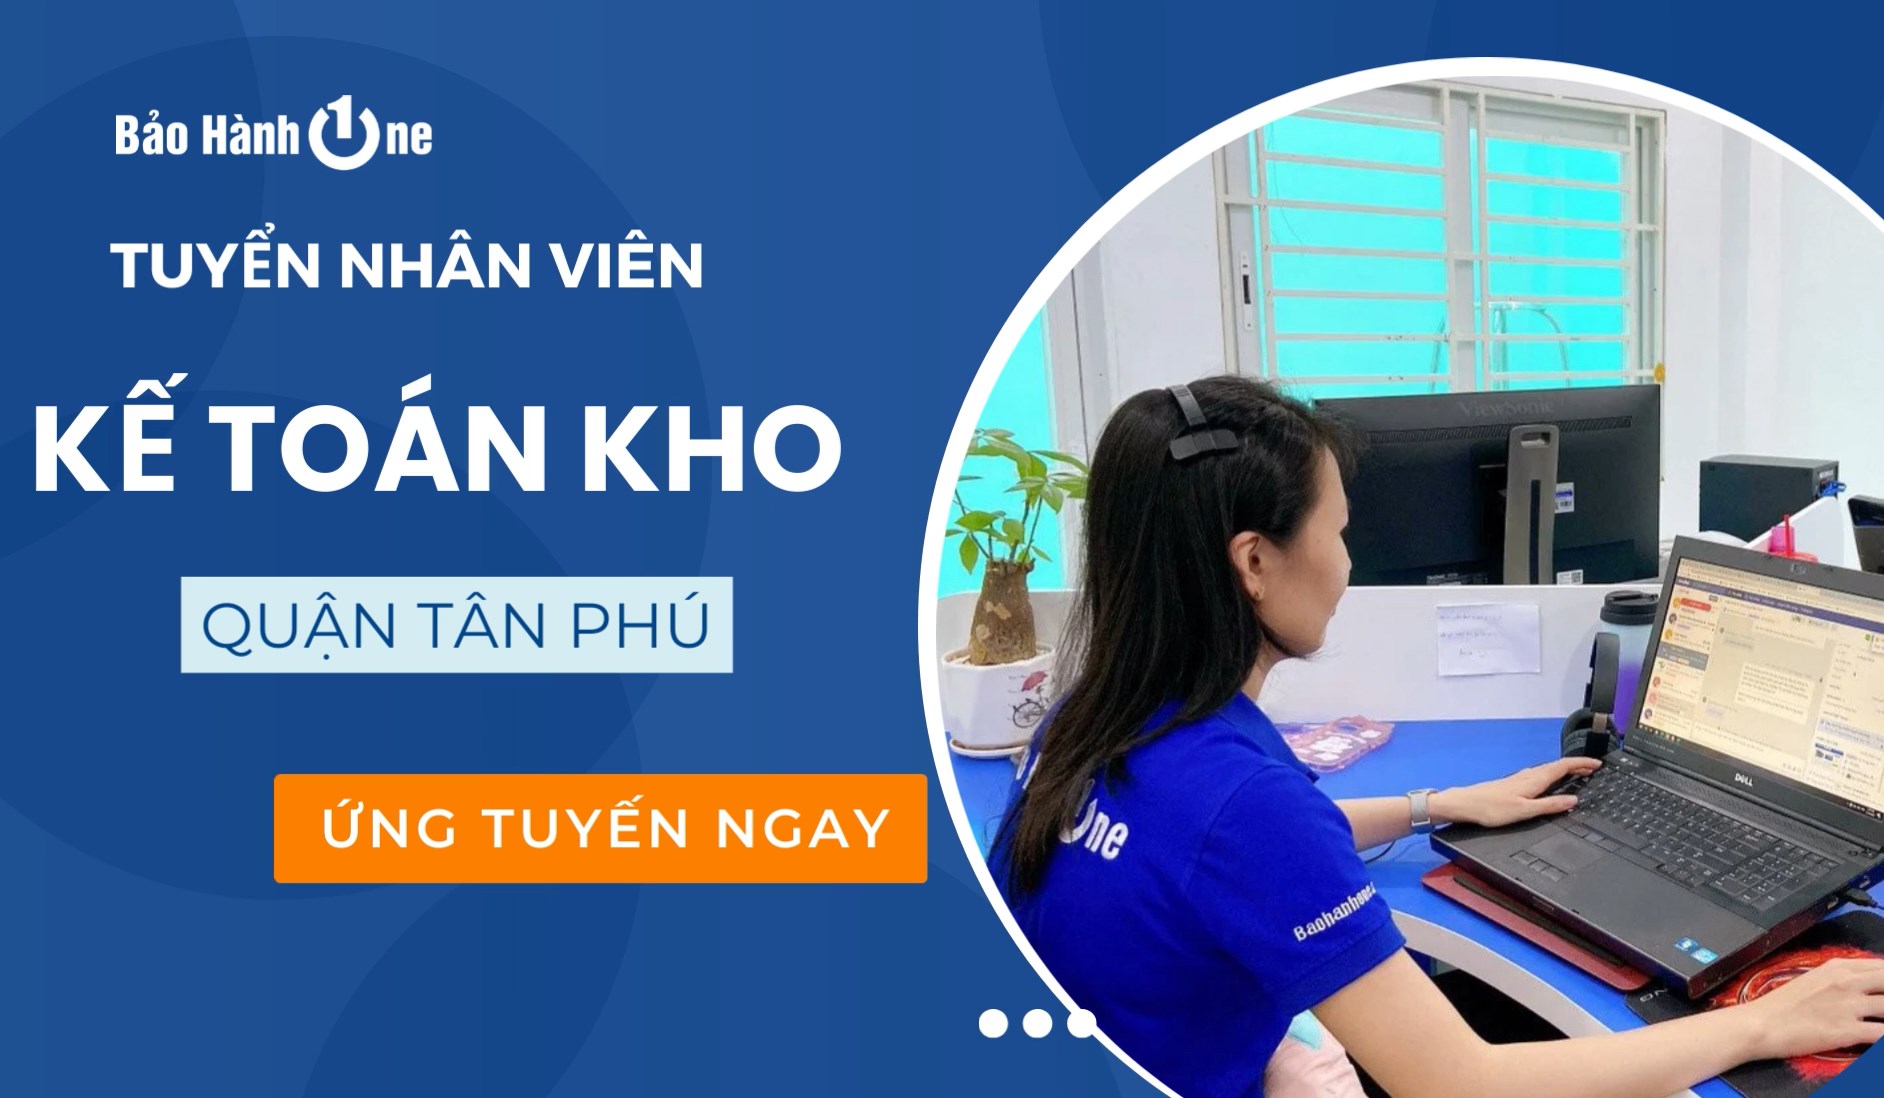 Tuyển Dụng Kế Toán Kho - Linh Kiện Laptop - Quận Tân Phú